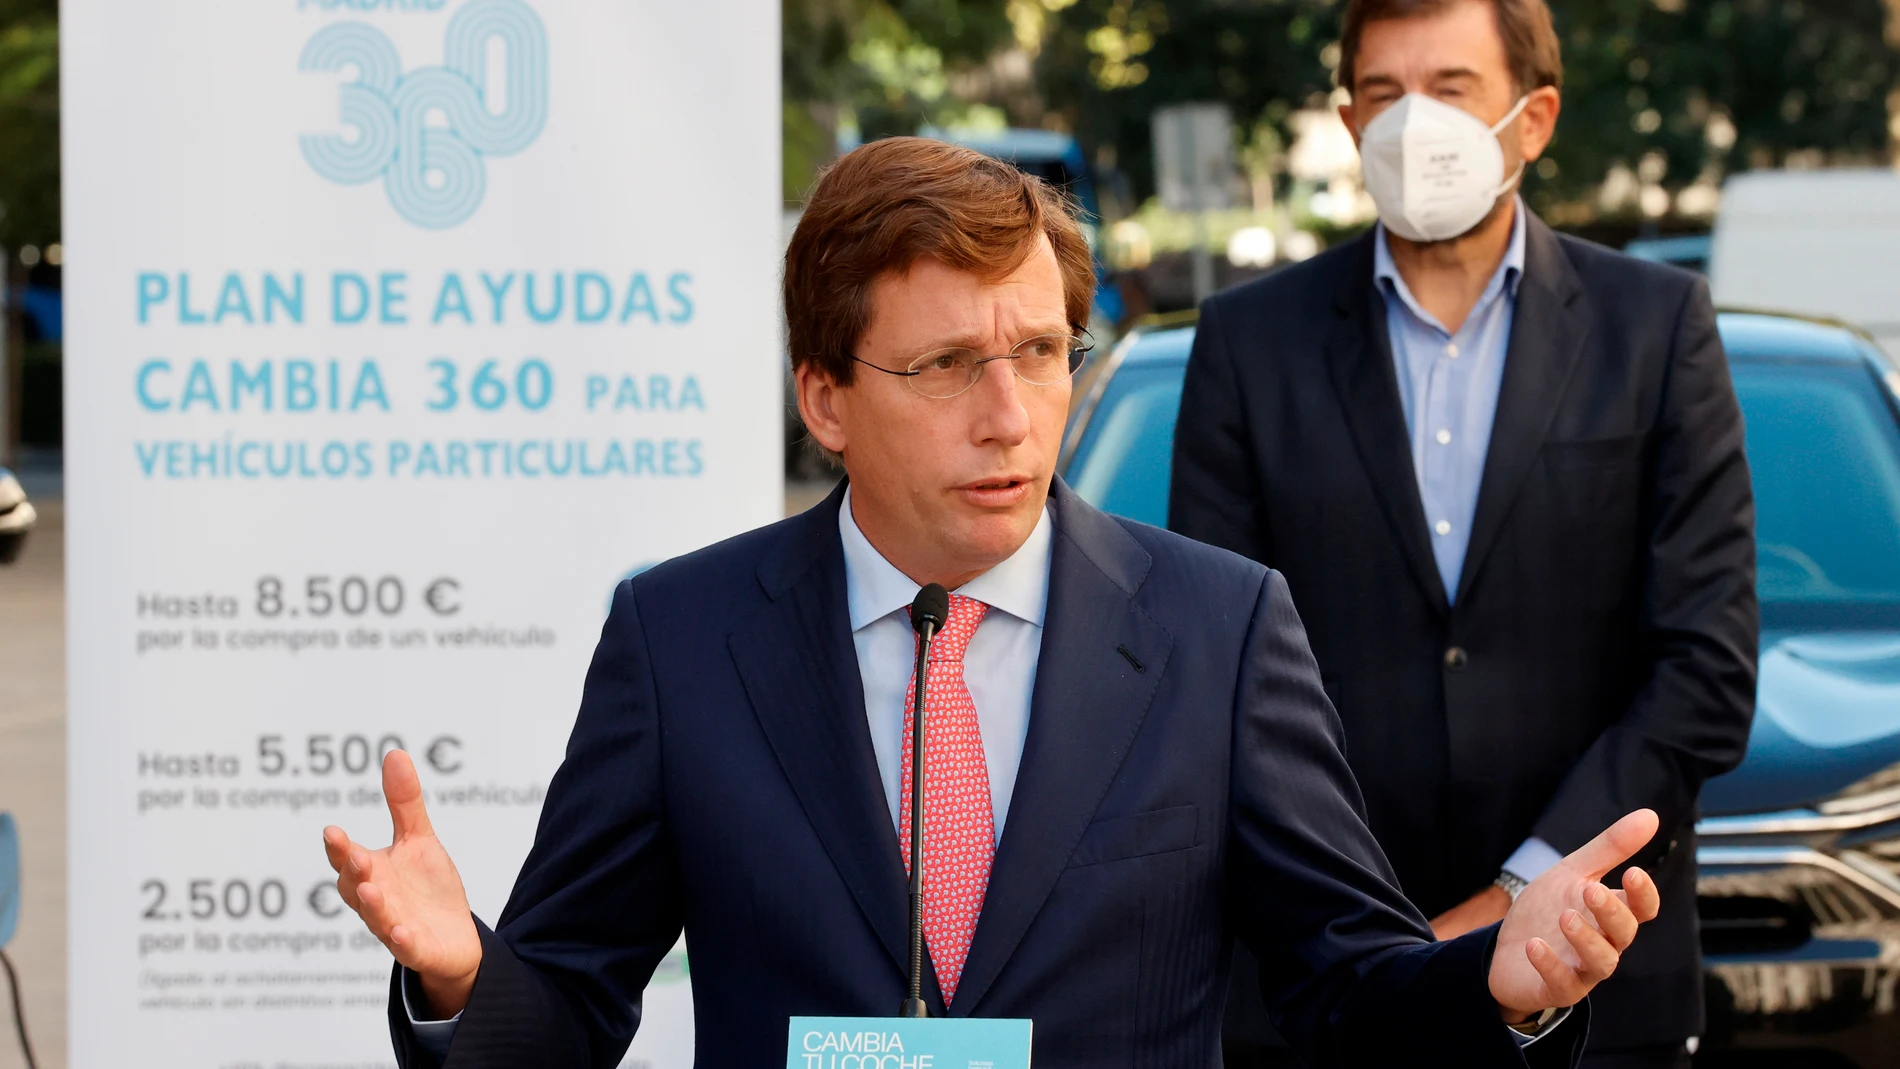 Ayudas Madrid 360 para sustituir los vehículos más contaminantes: quién puede solicitarlas y cuándo